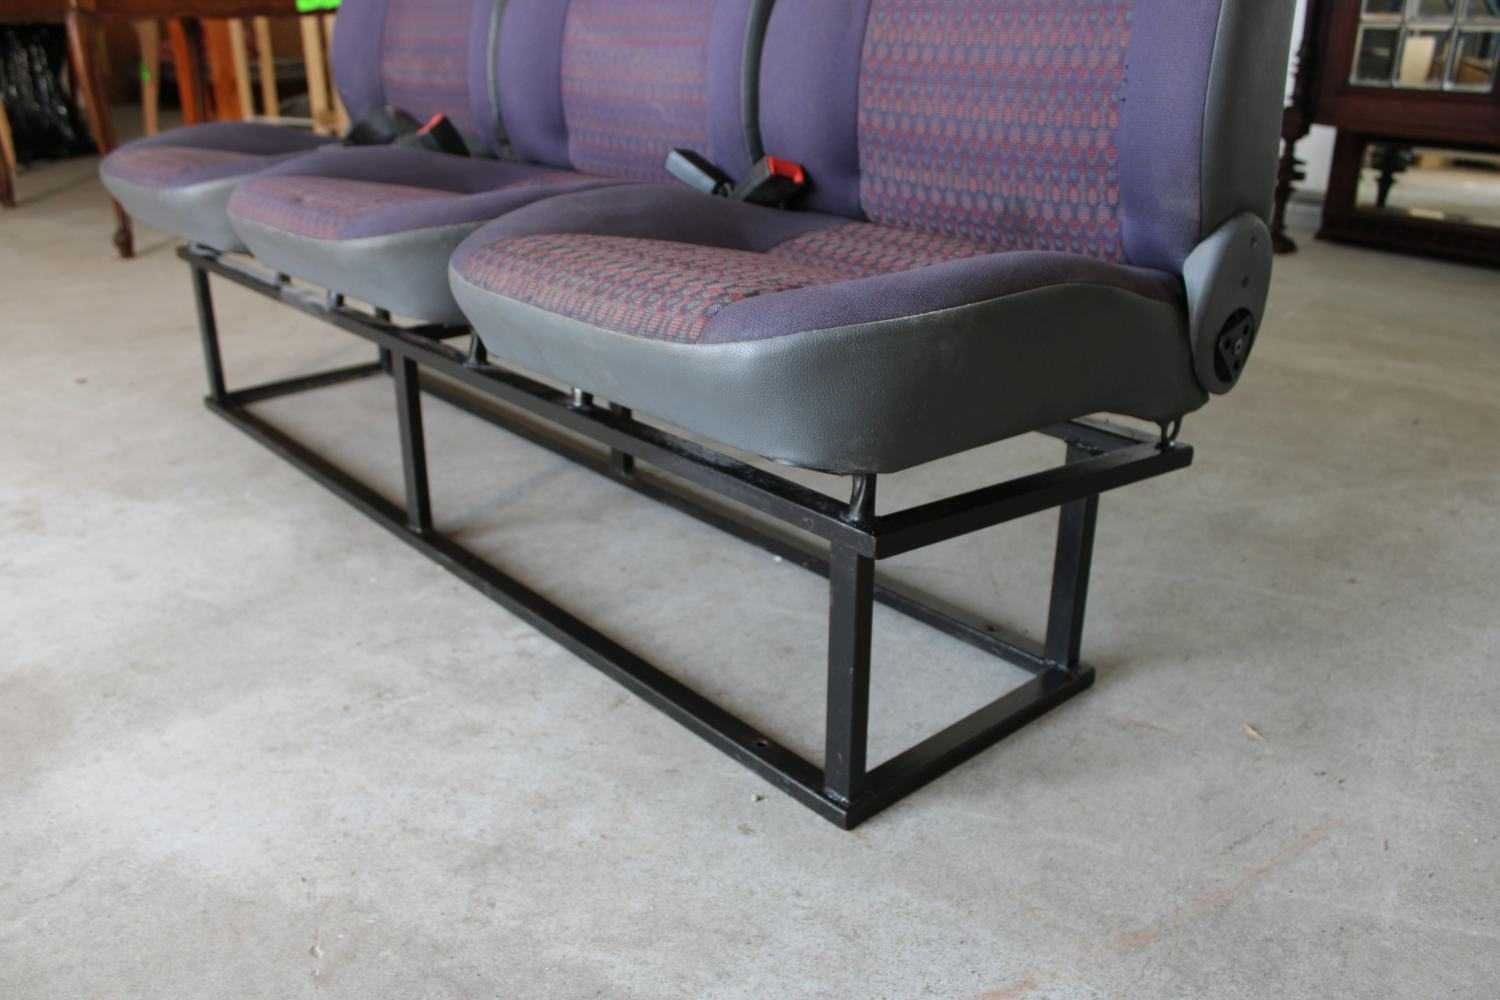 Rząd Foteli do busa fotel kanapa długość 165cm